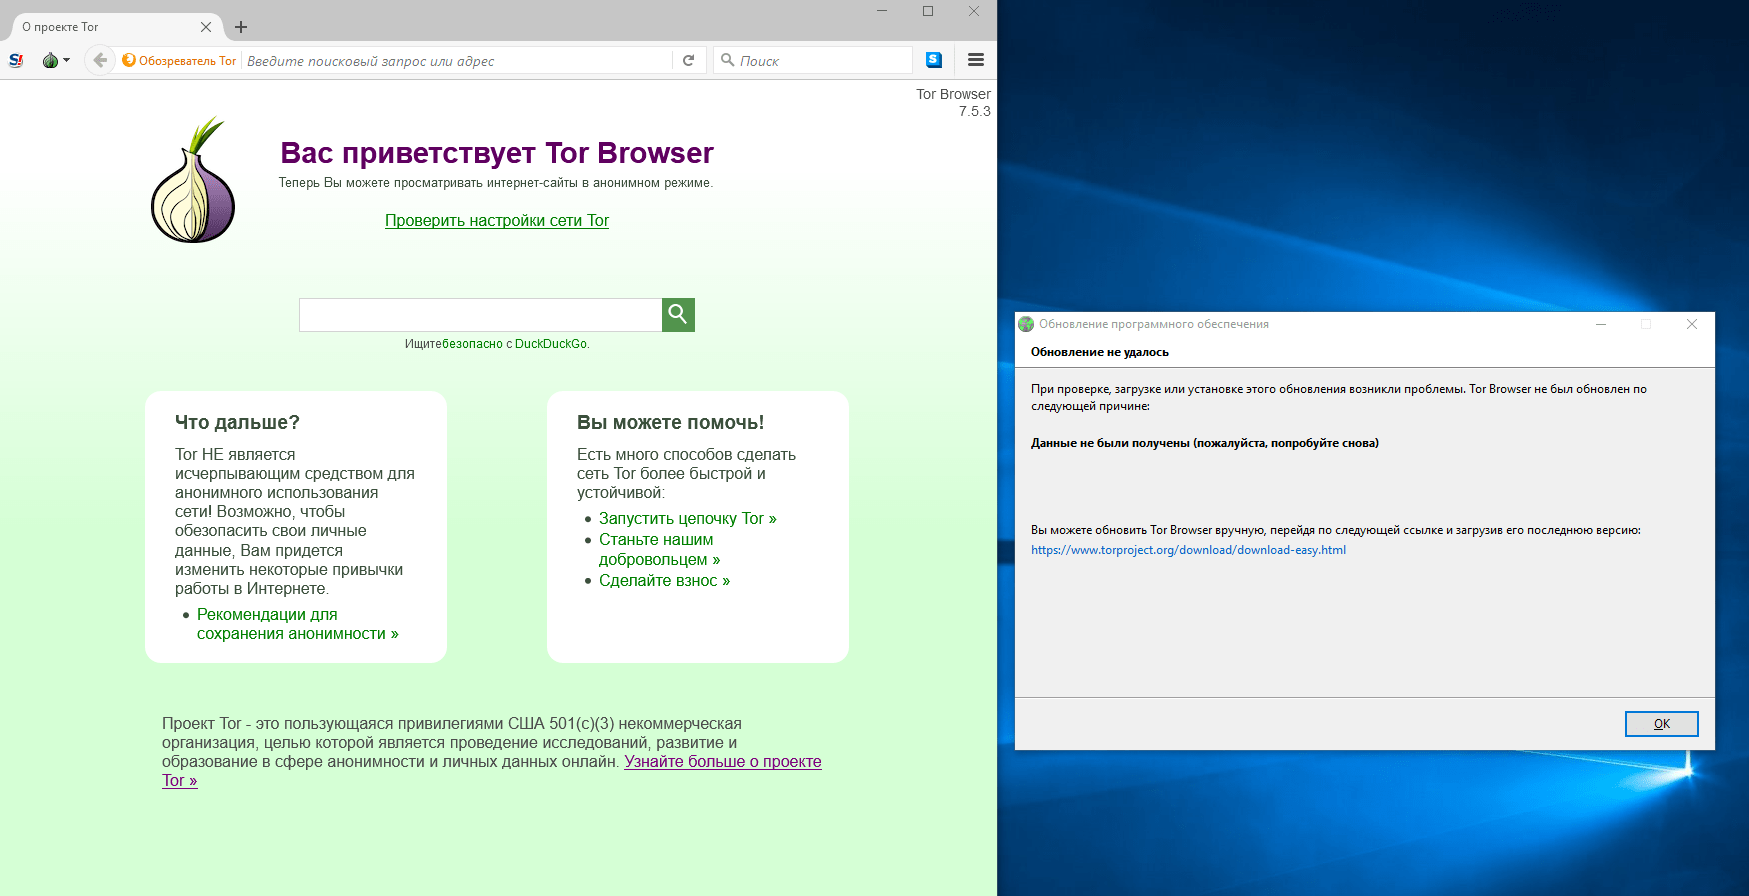 Почему не включается тор браузер даркнет скачать бесплатно blacksprut на русском на windows 8 даркнетruzxpnew4af